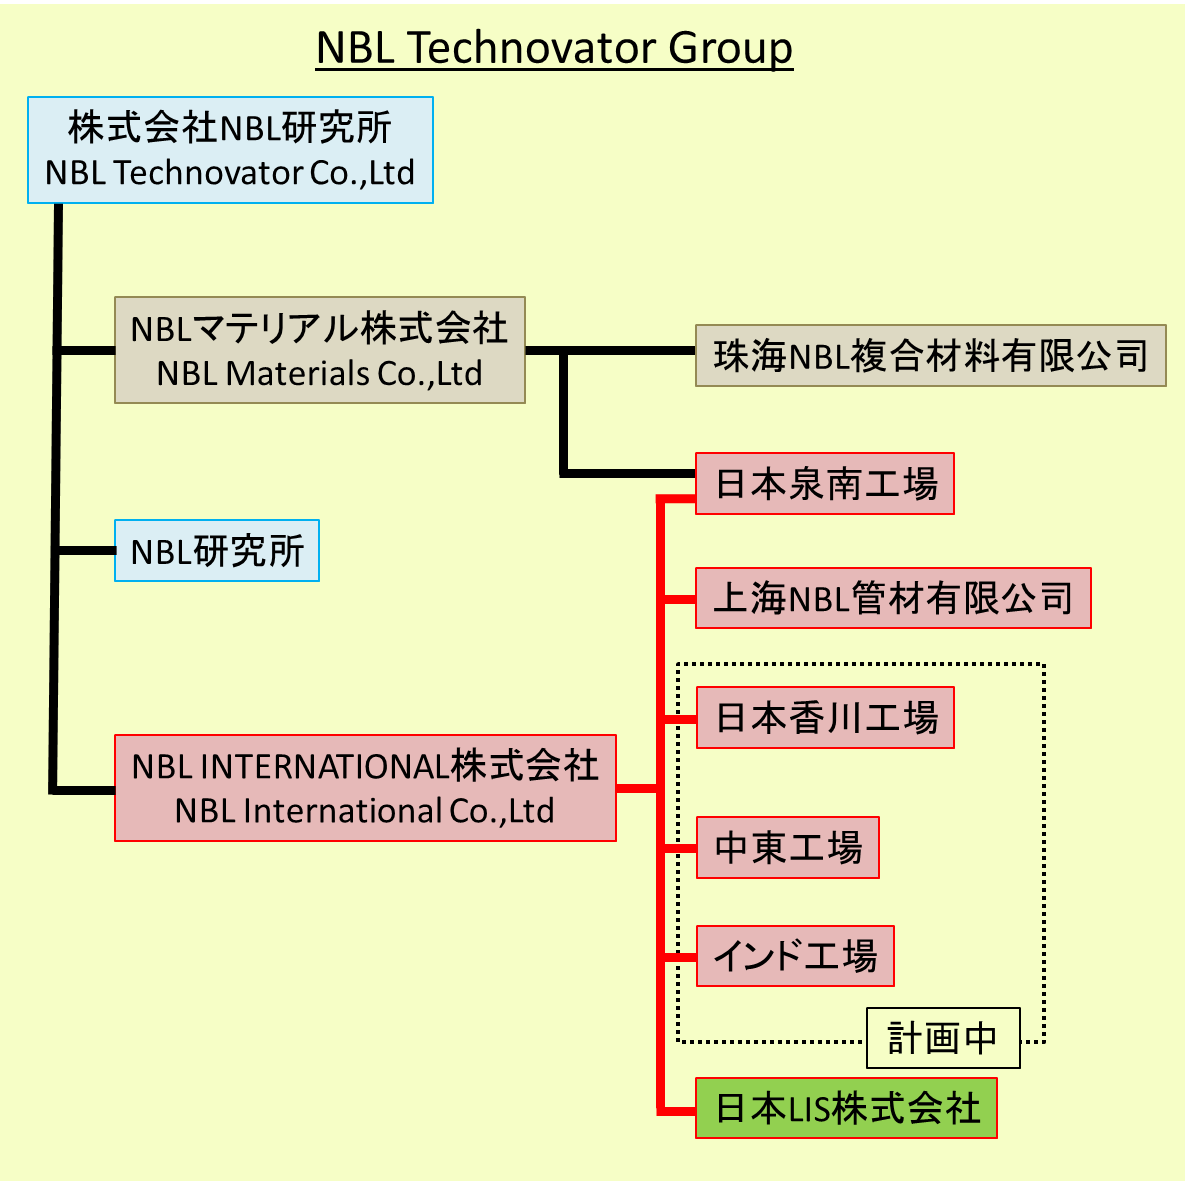 NBL Technovator Group 組織構成図